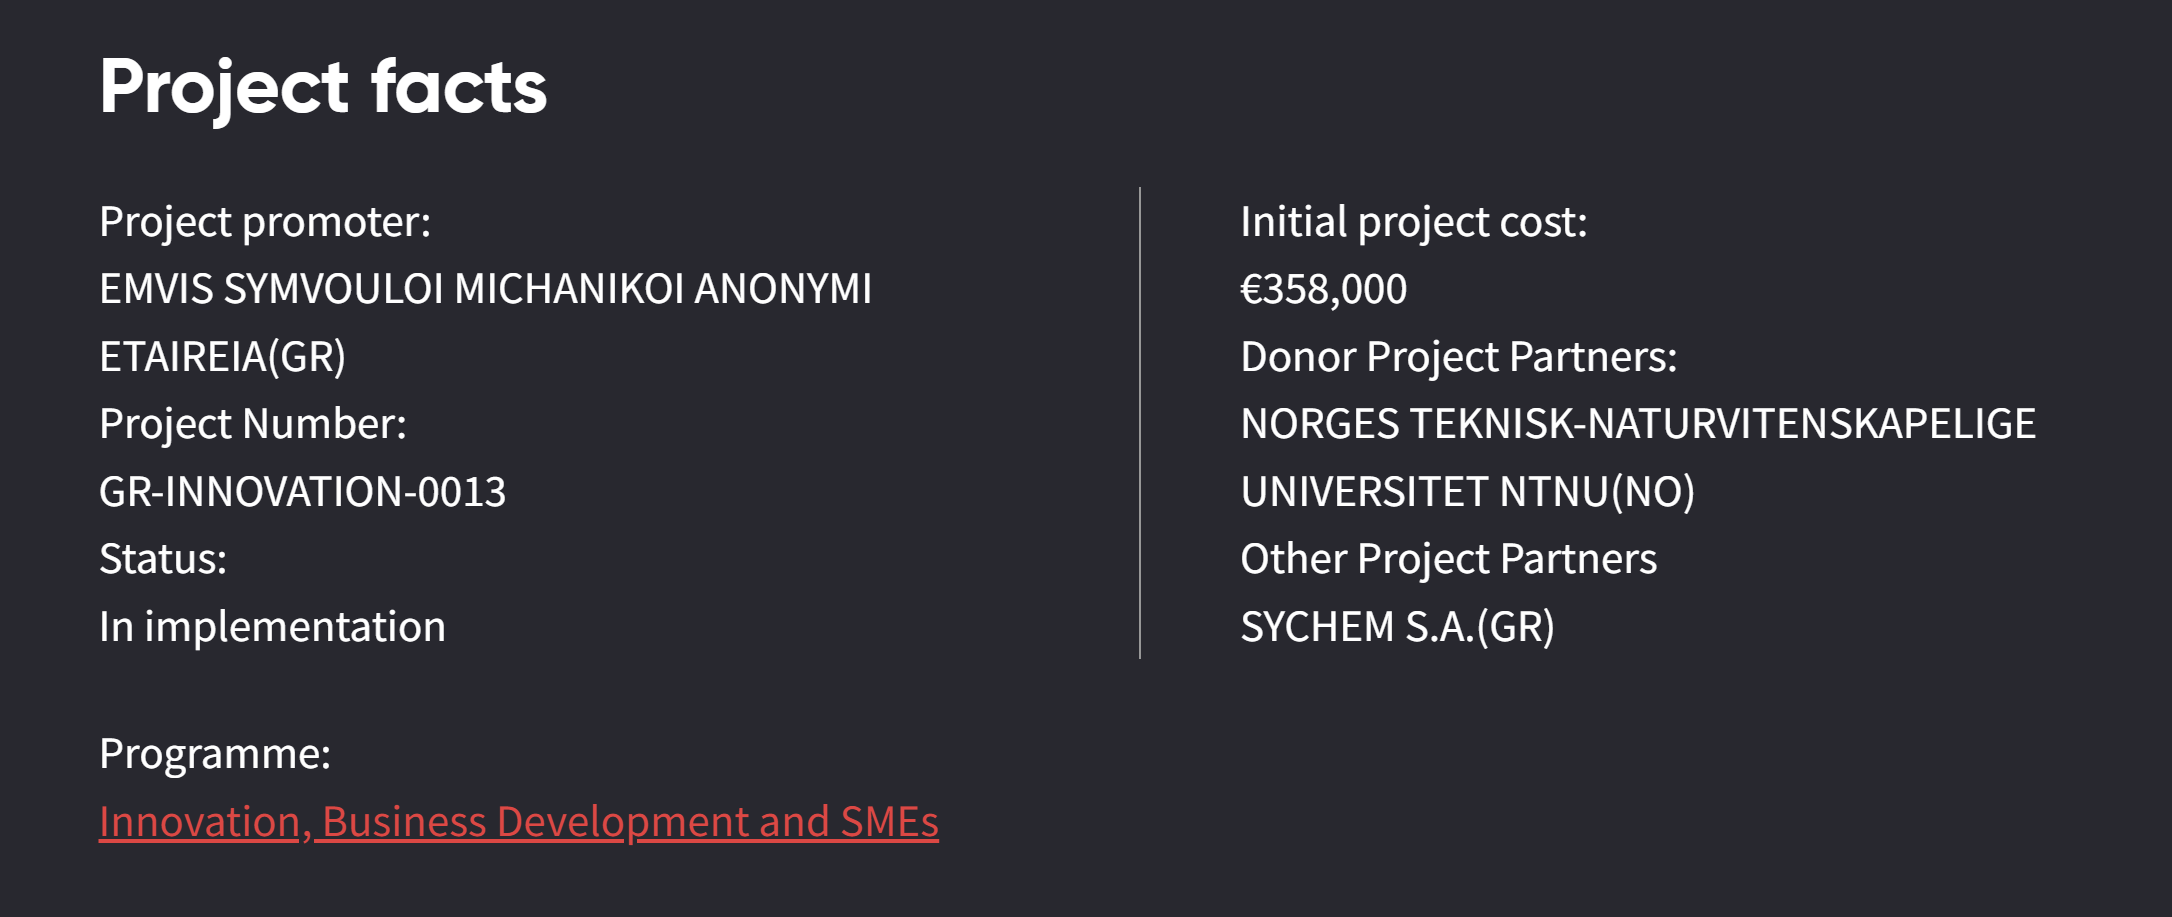 Project description